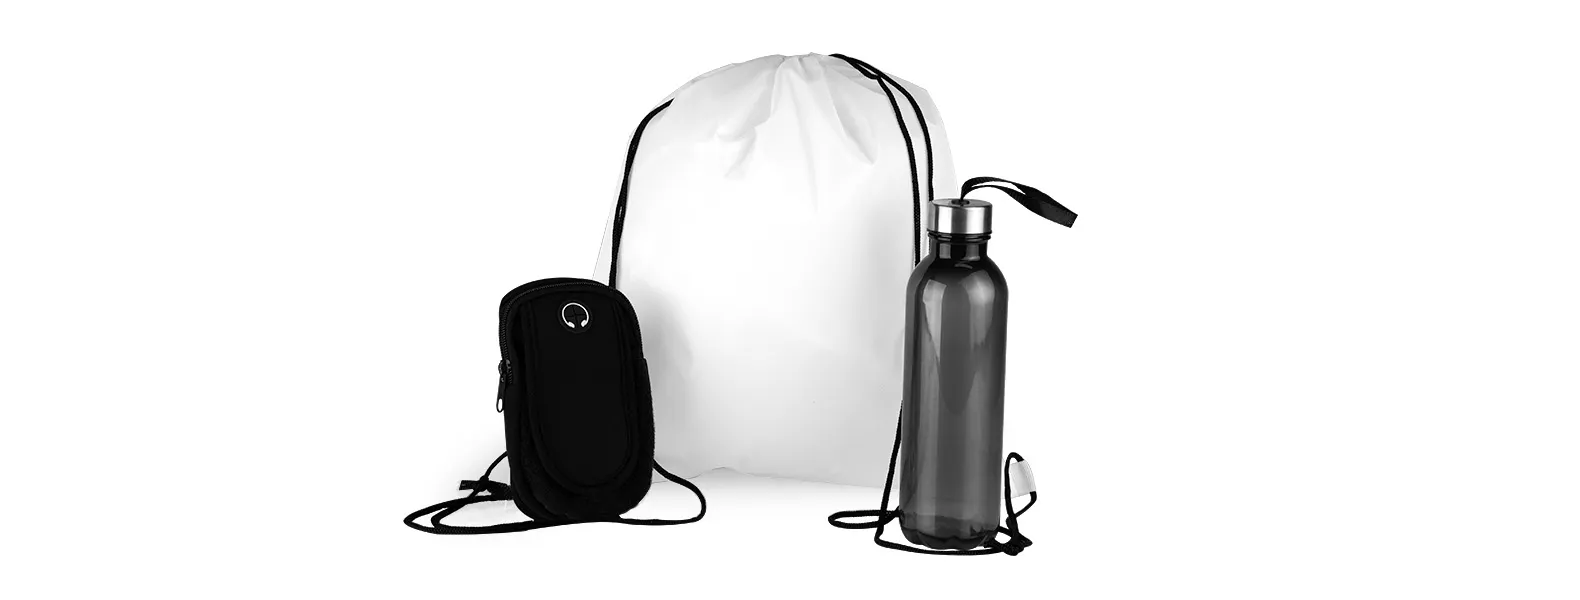 Kit boas vindas. Conta com mochila em nylon 420 branca; garrafa pet na cor preta e braçadeira esportiva para celular.